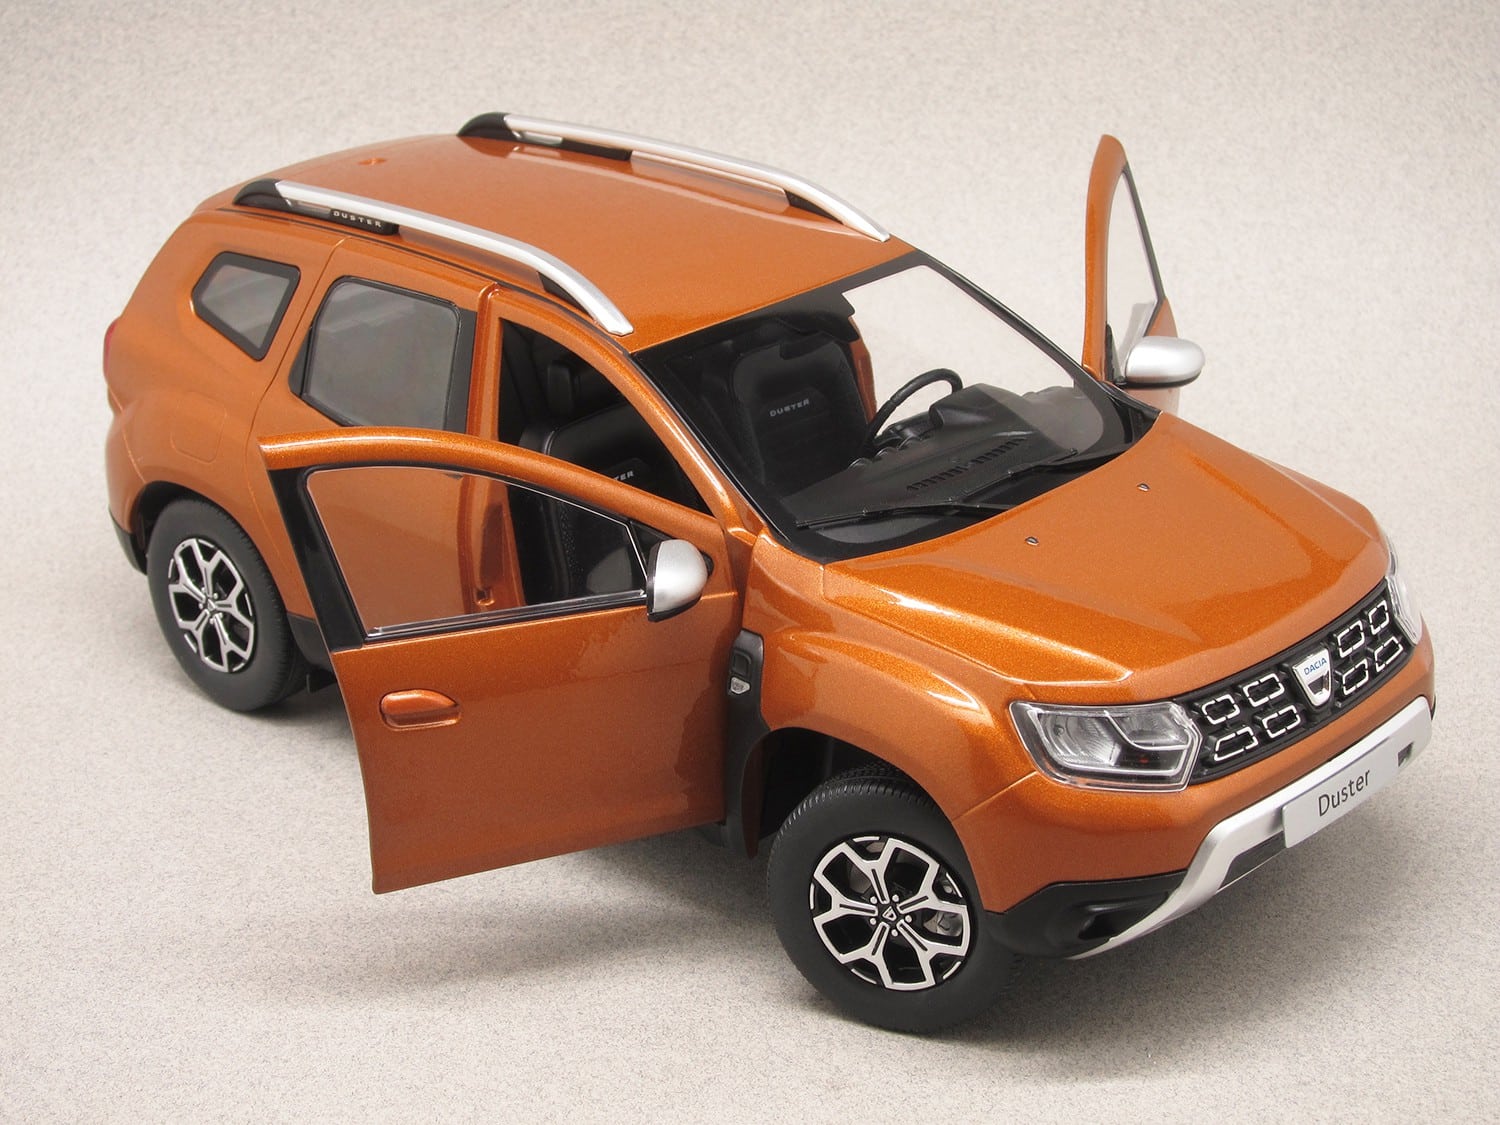 Dacia Duster 2018 orange (Solido) 1:18 - Minicarweb